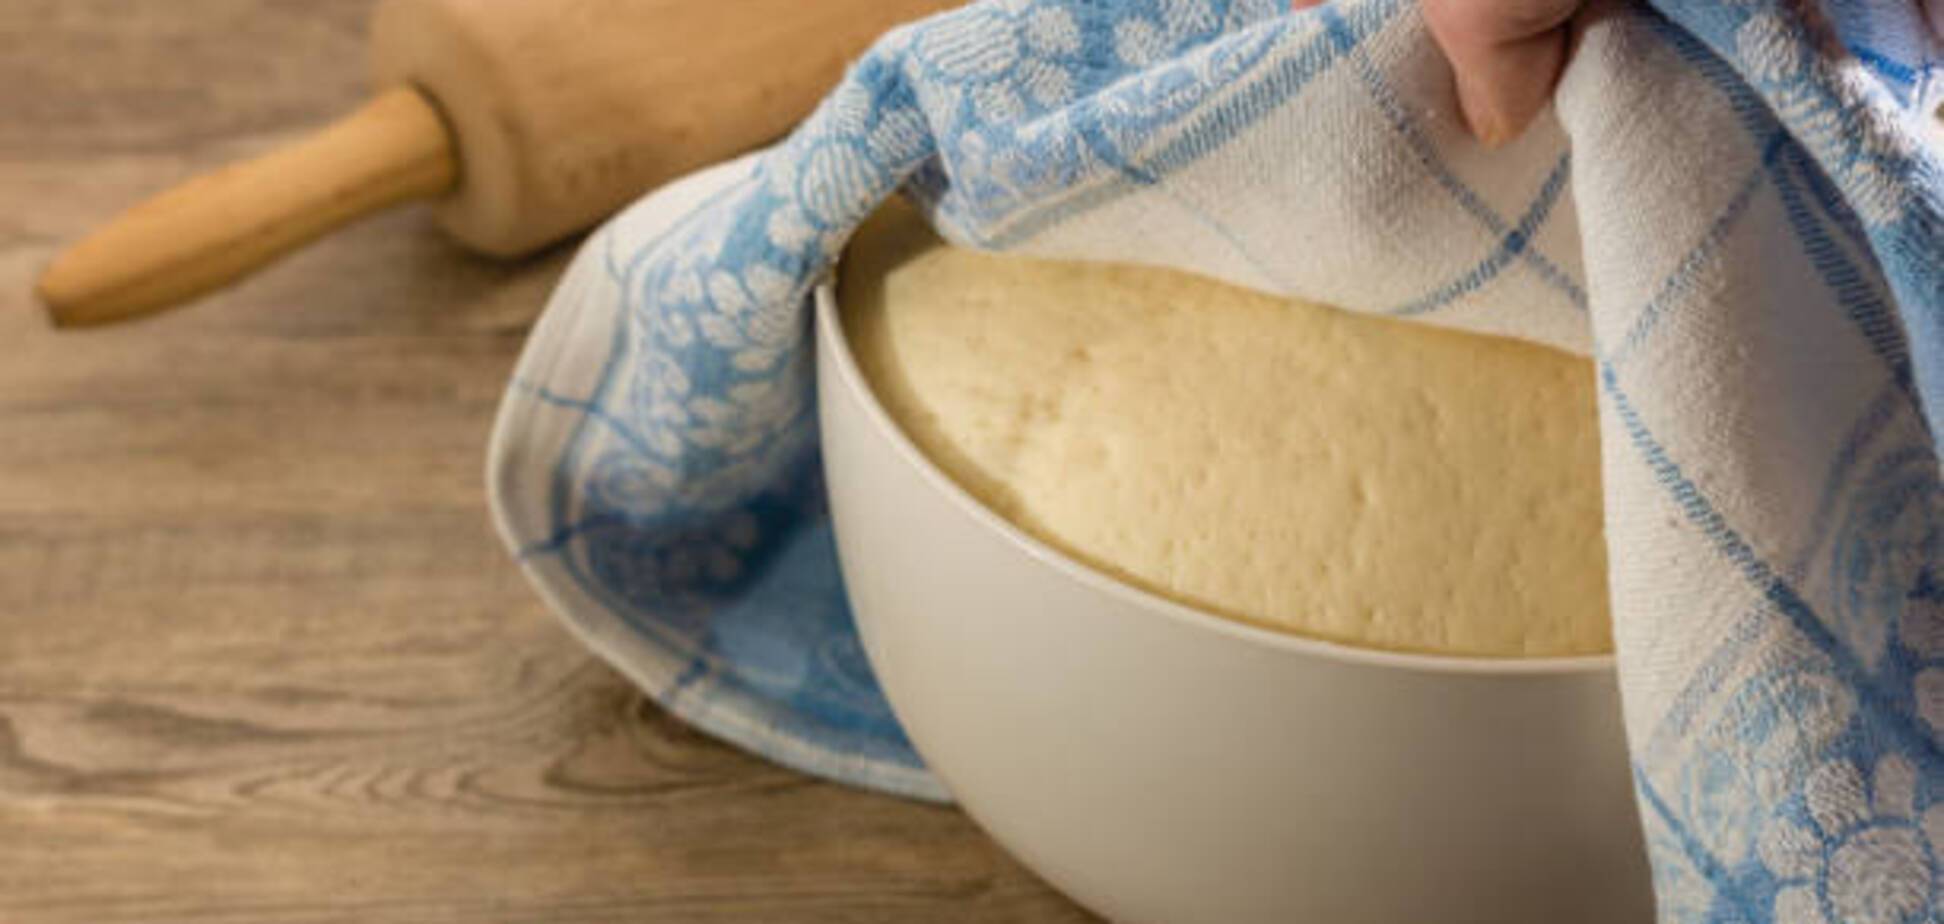 Как приготовить заварное тесто для вареников и пельменей, которое не разваривается: рецепт